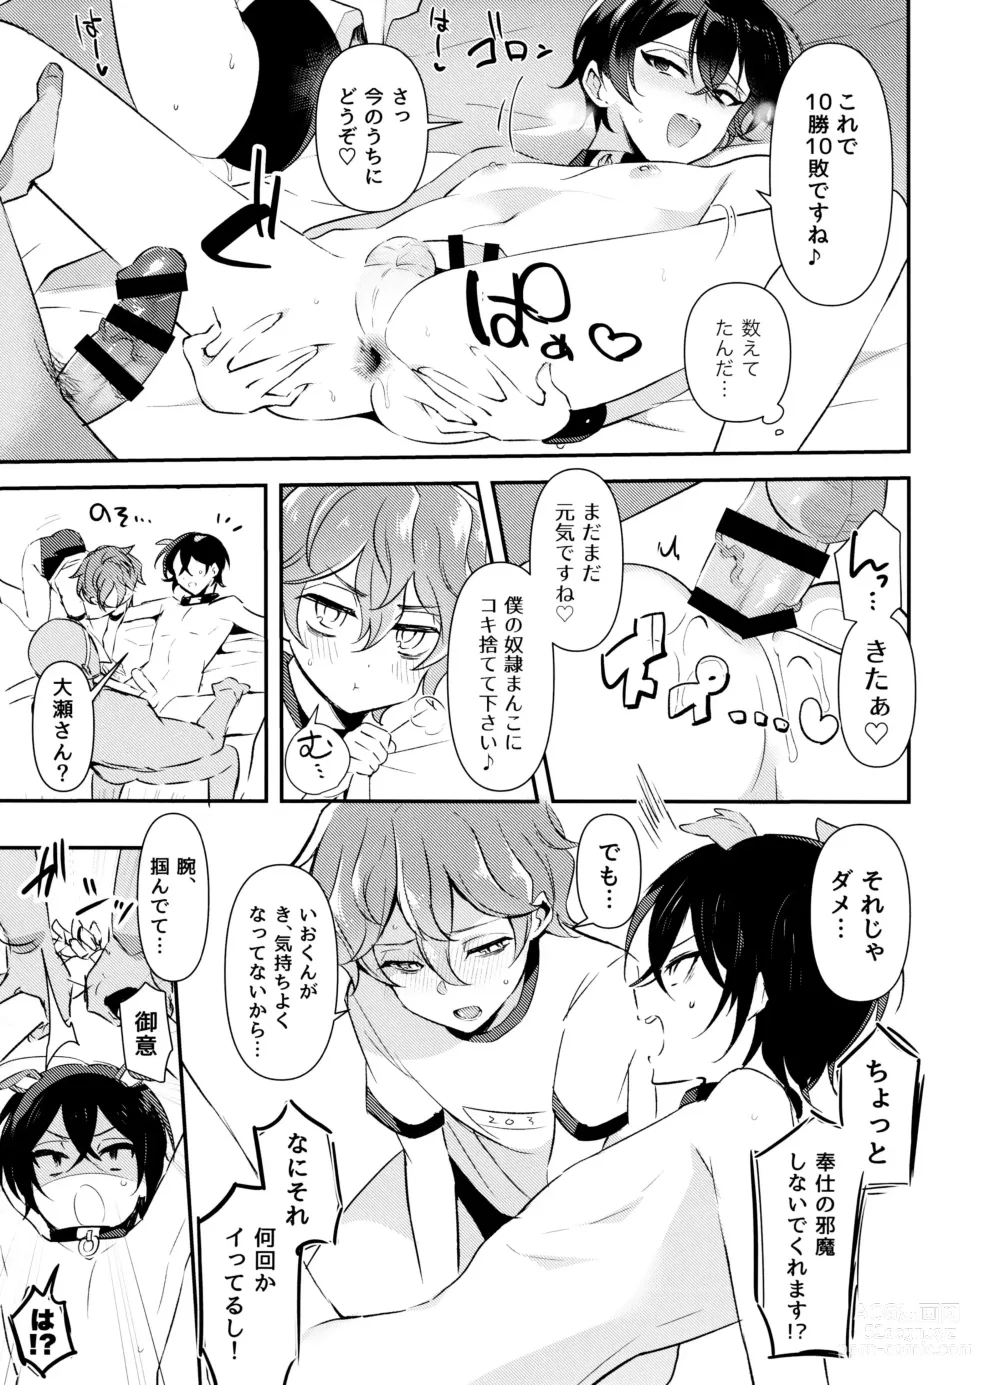 Page 14 of doujinshi Nennemu Fight Gambling